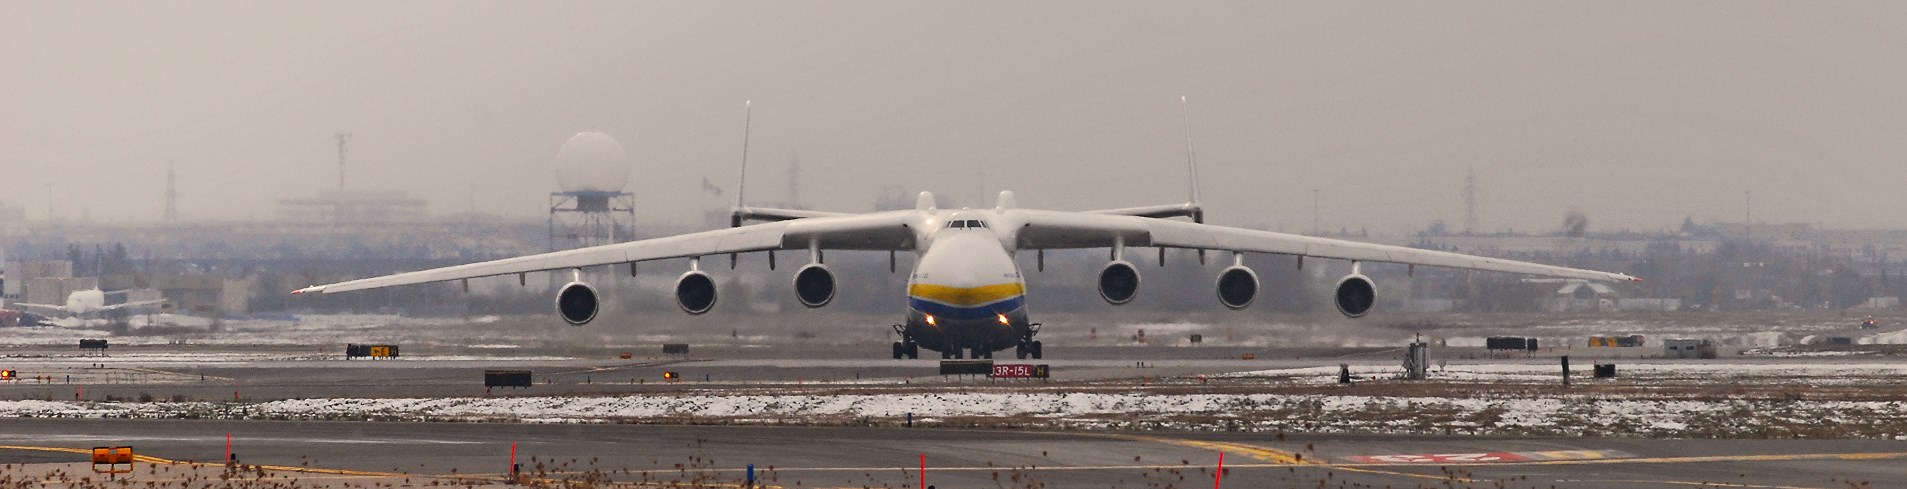 Antonov An-225 prepares for takeoff. (Photo courtesy of Flickr user: aseemsjohri)